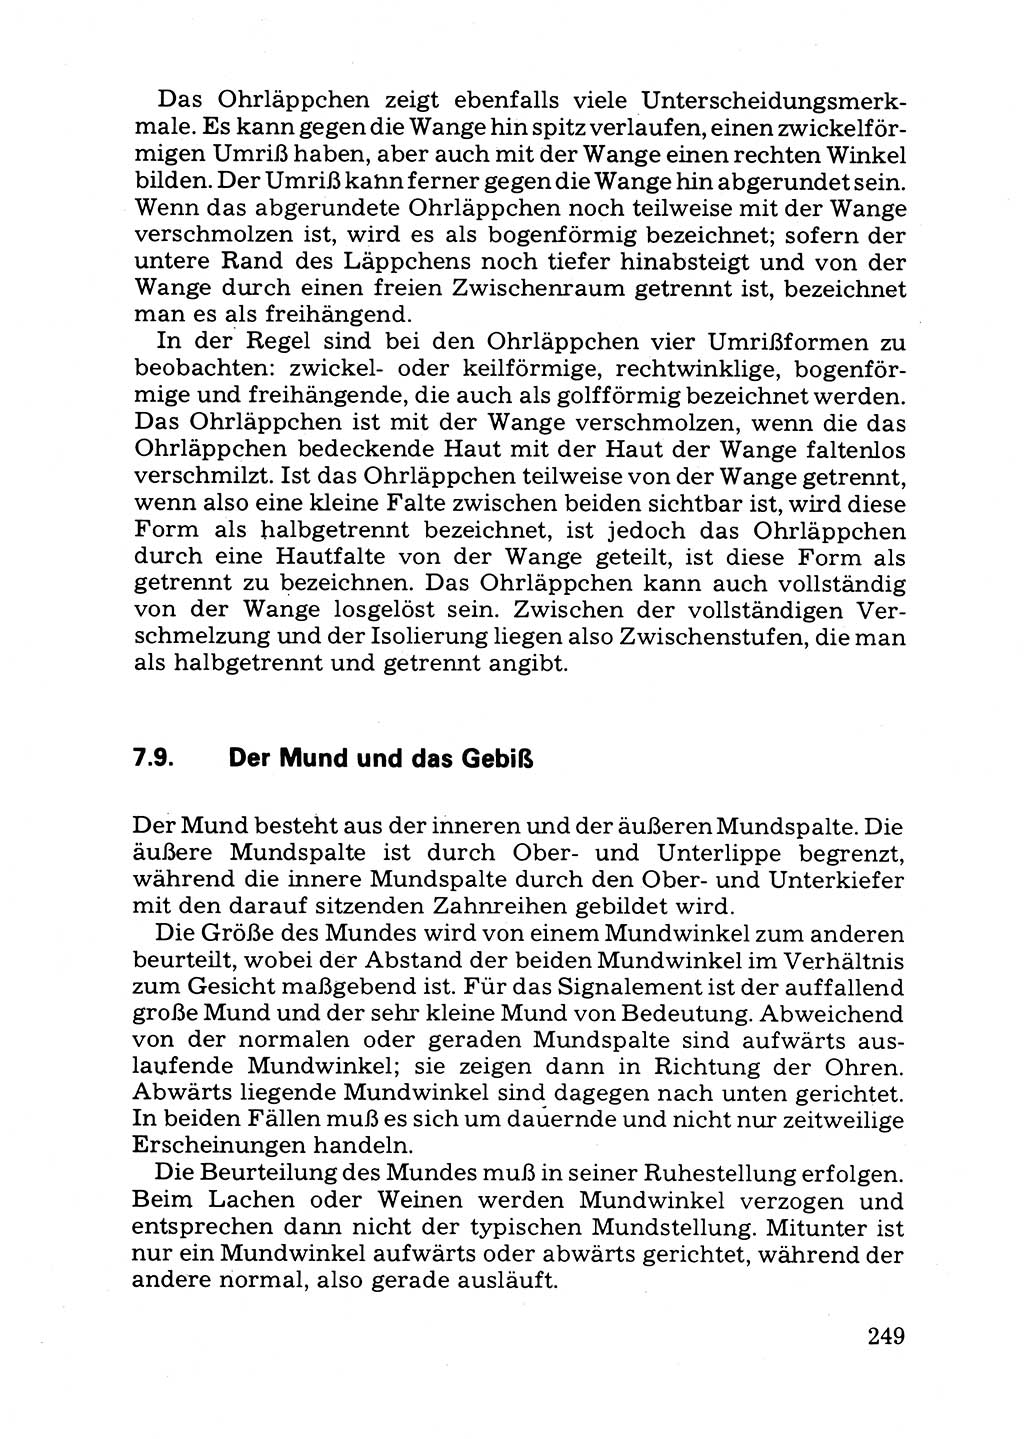 Das subjektive Porträt [Deutsche Demokratische Republik (DDR)] 1981, Seite 249 (Subj. Port. DDR 1981, S. 249)